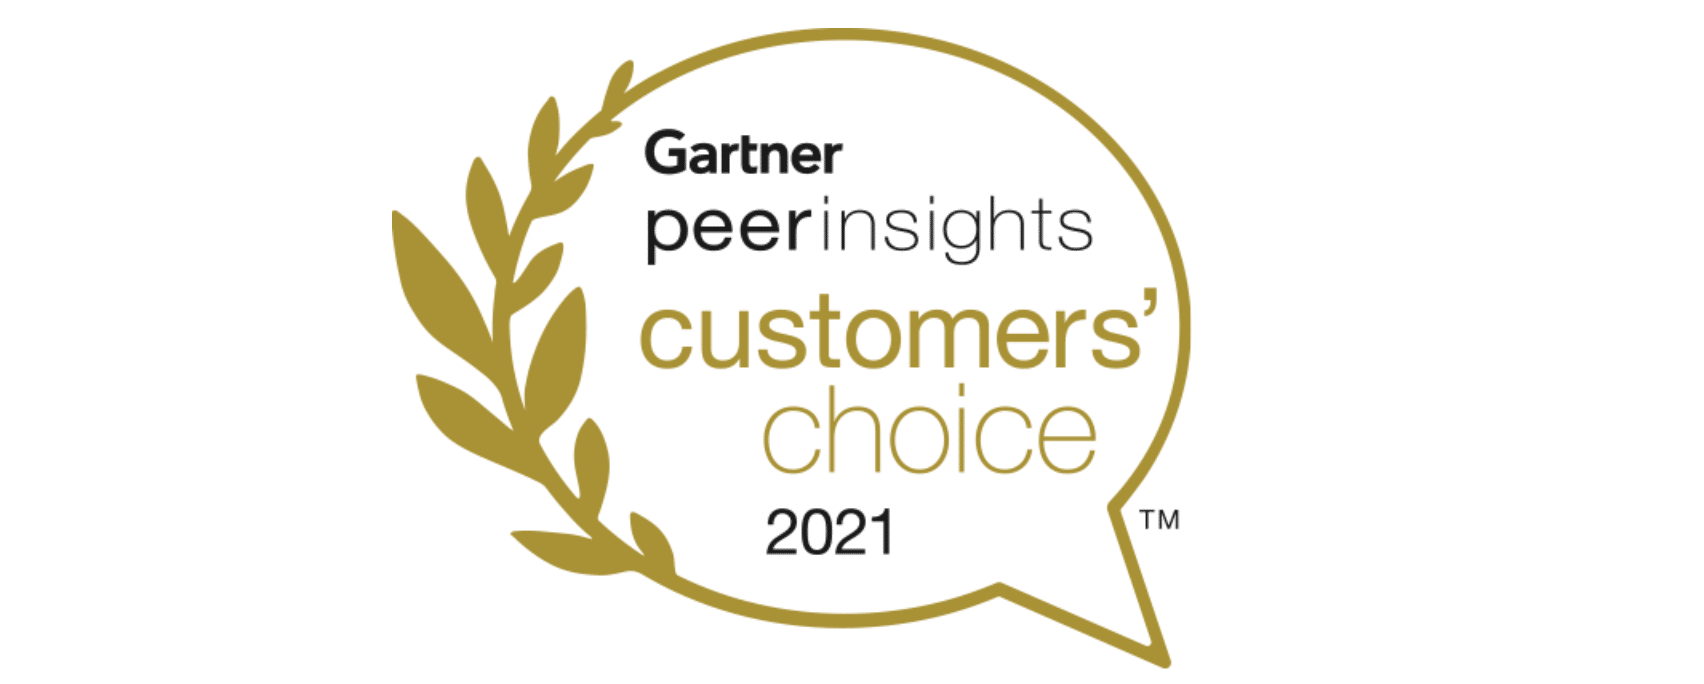 gartner-customers-choice-logo